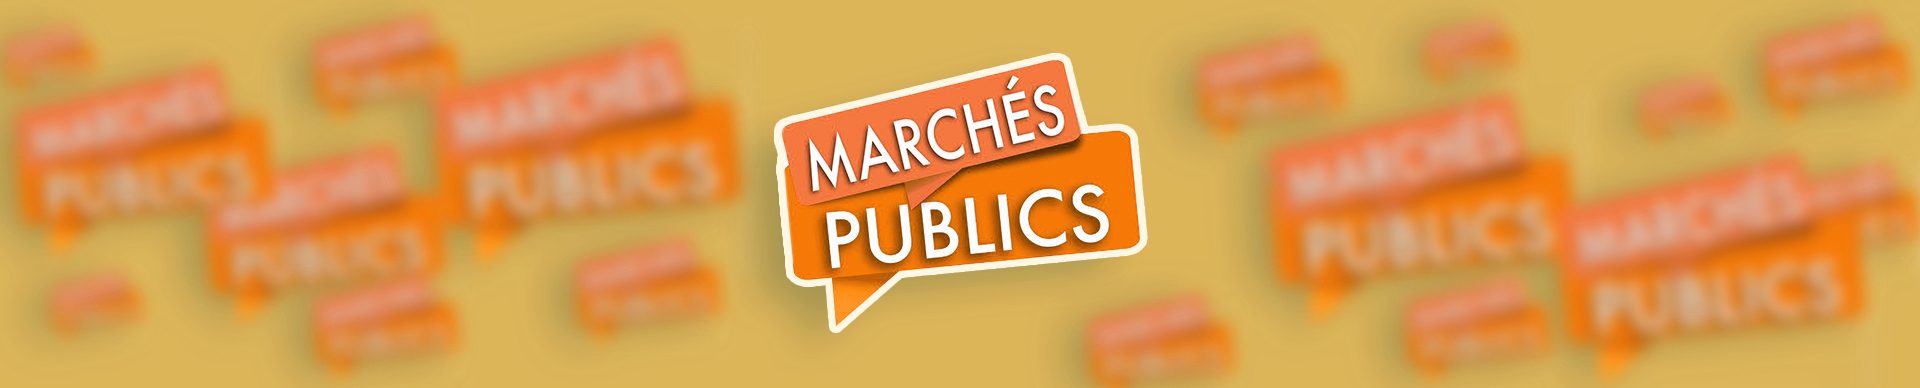 bandeau-marches-publics-mairie